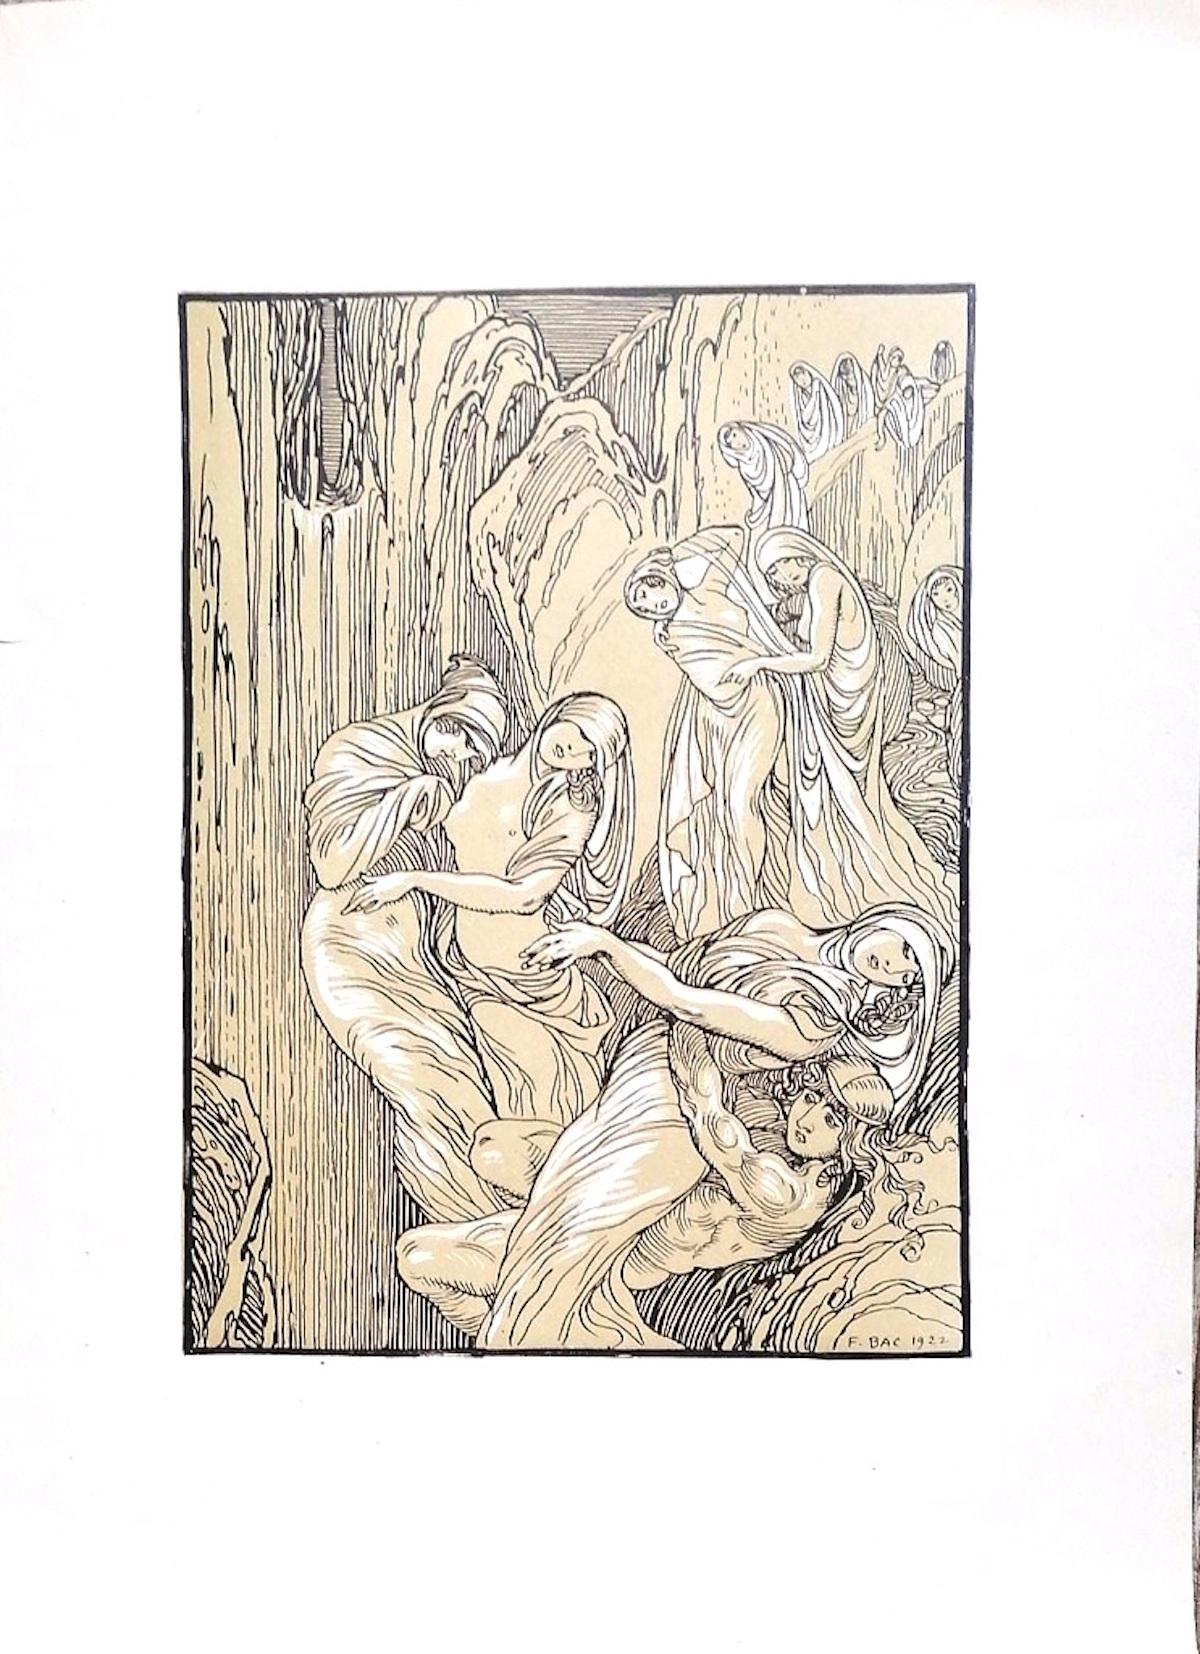 Die weinenden Frauen sind ein originelles modernes Kunstwerk von Ferdinand Bac (1859 - 1952) aus dem Jahr 1922.

Signiert und datiert auf der Platte am unteren rechten Rand: F. Bac 1922.

Original-Lithographie auf Elfenbeinpapier.

Perfekte